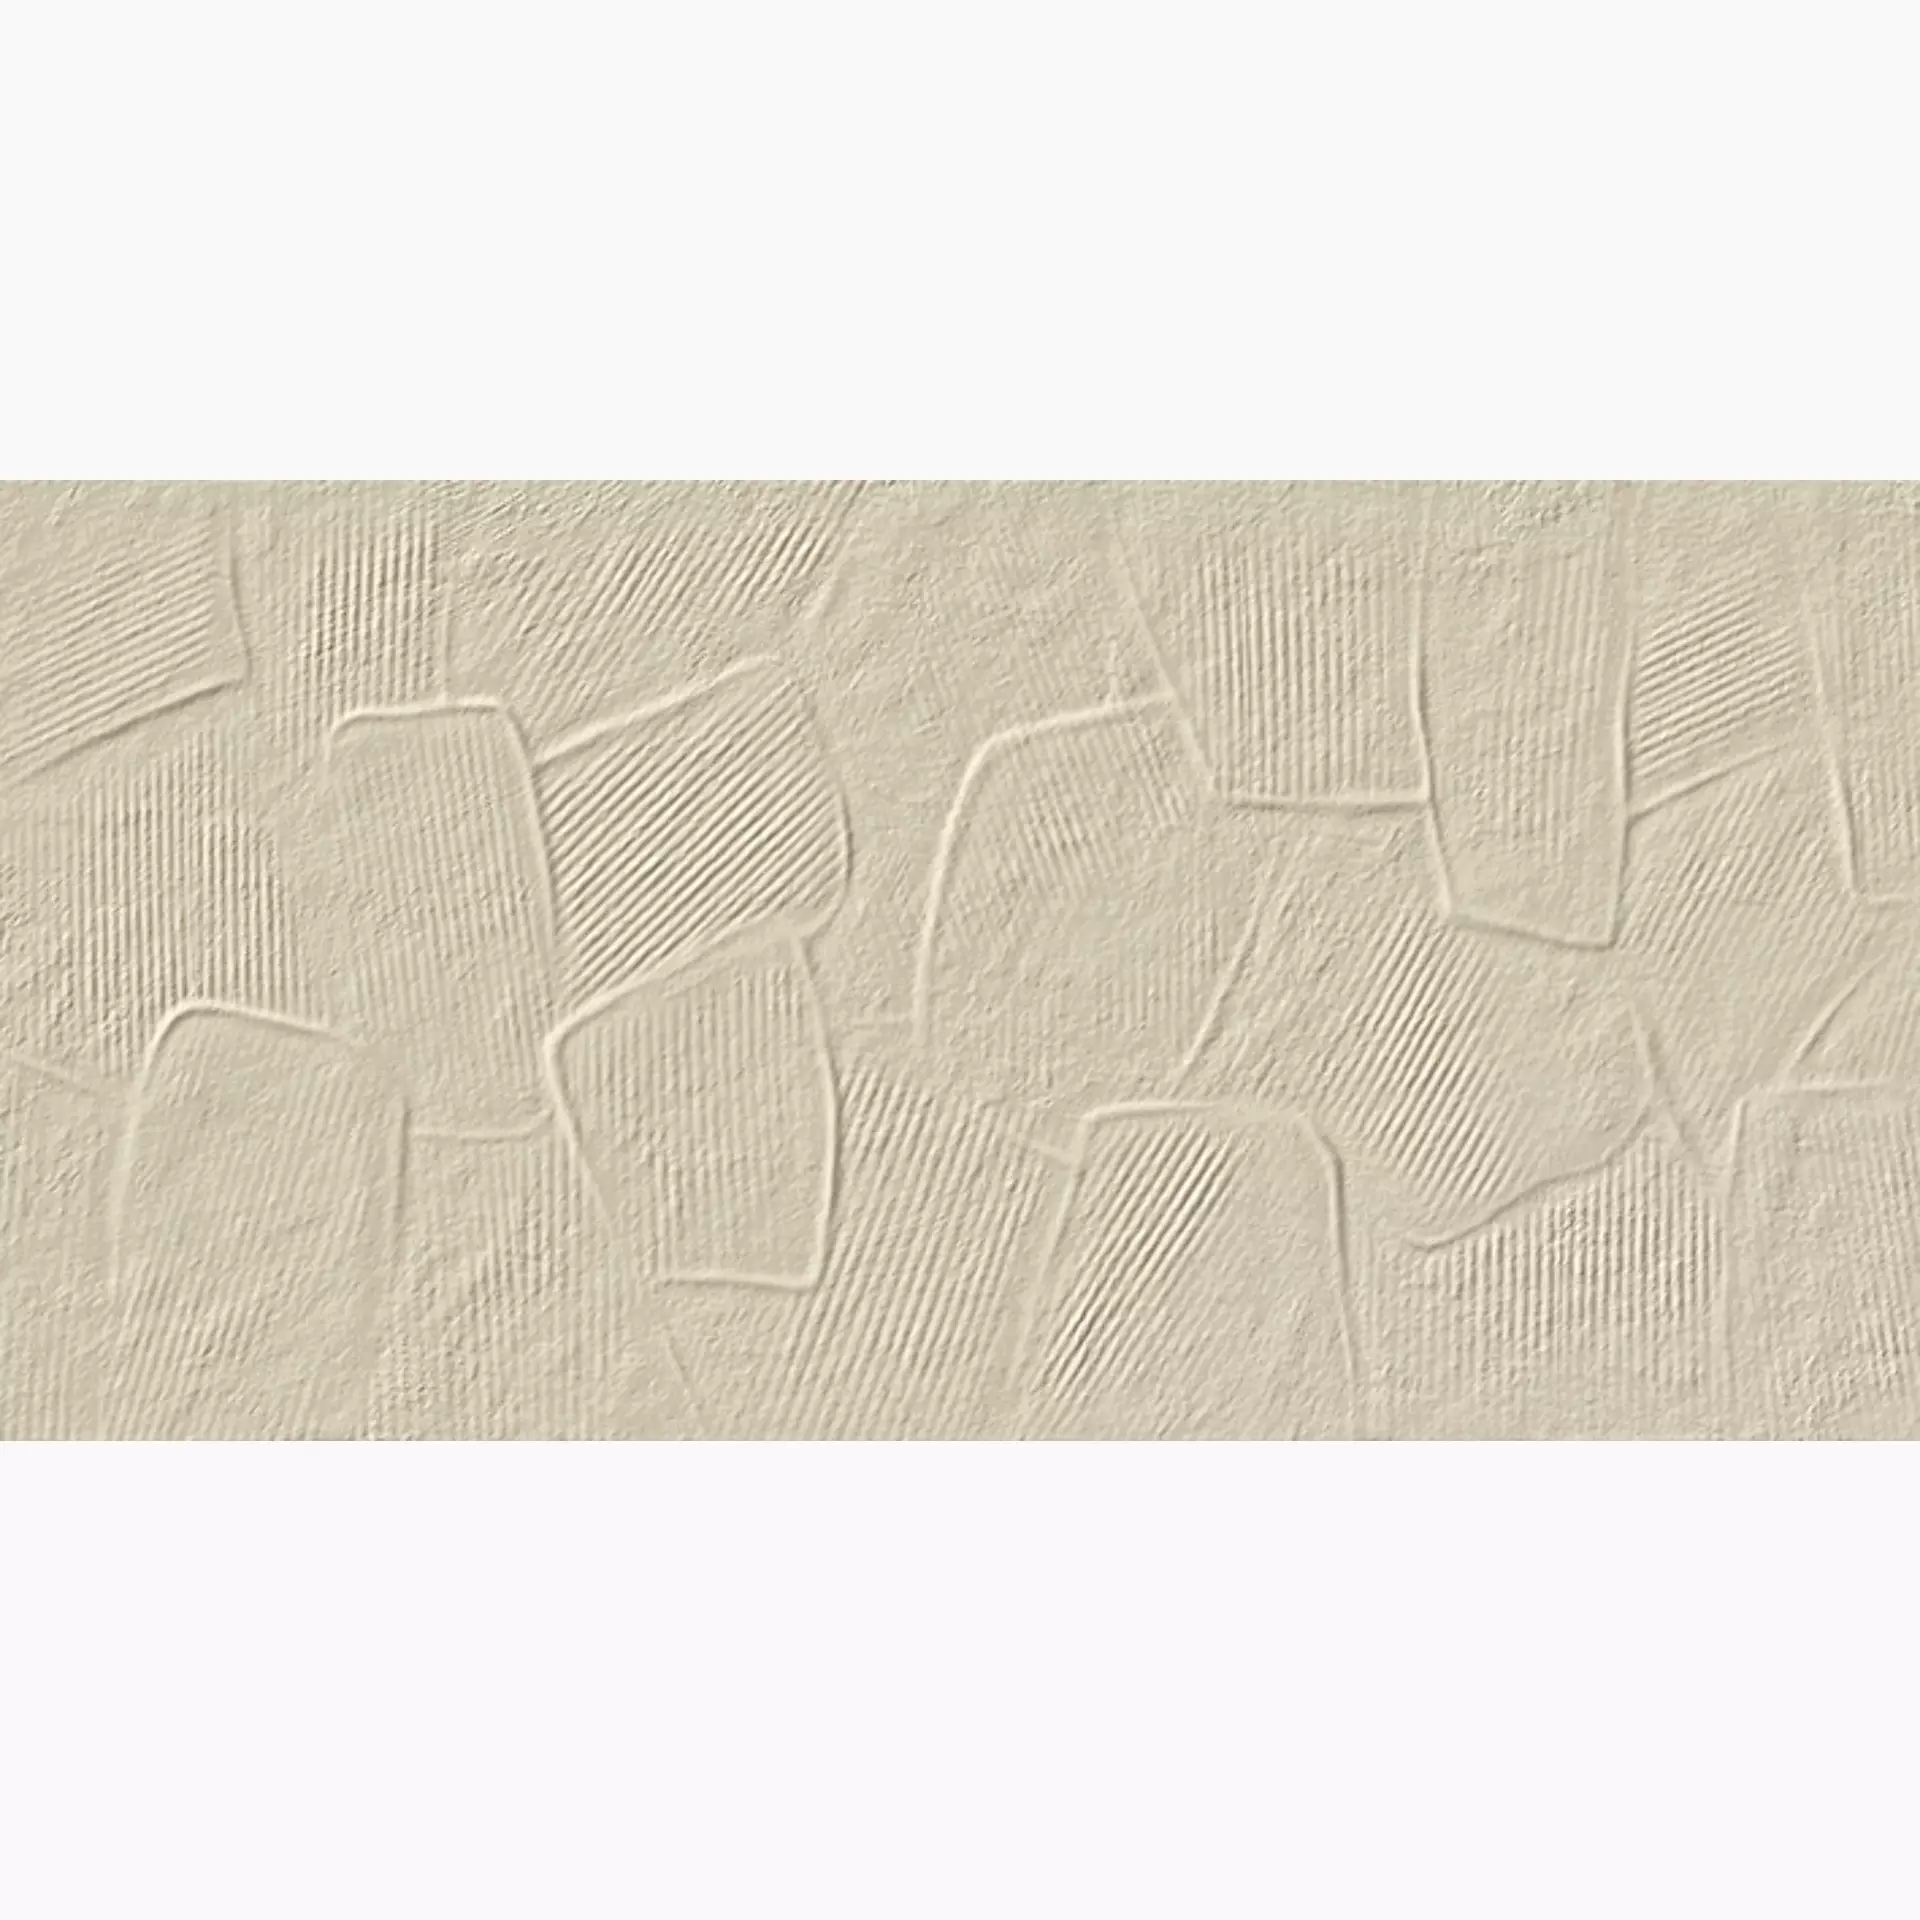 Villeroy & Boch Soft Colours Sand Matt Decor 1583-DS20 30x60cm rectified 9mm